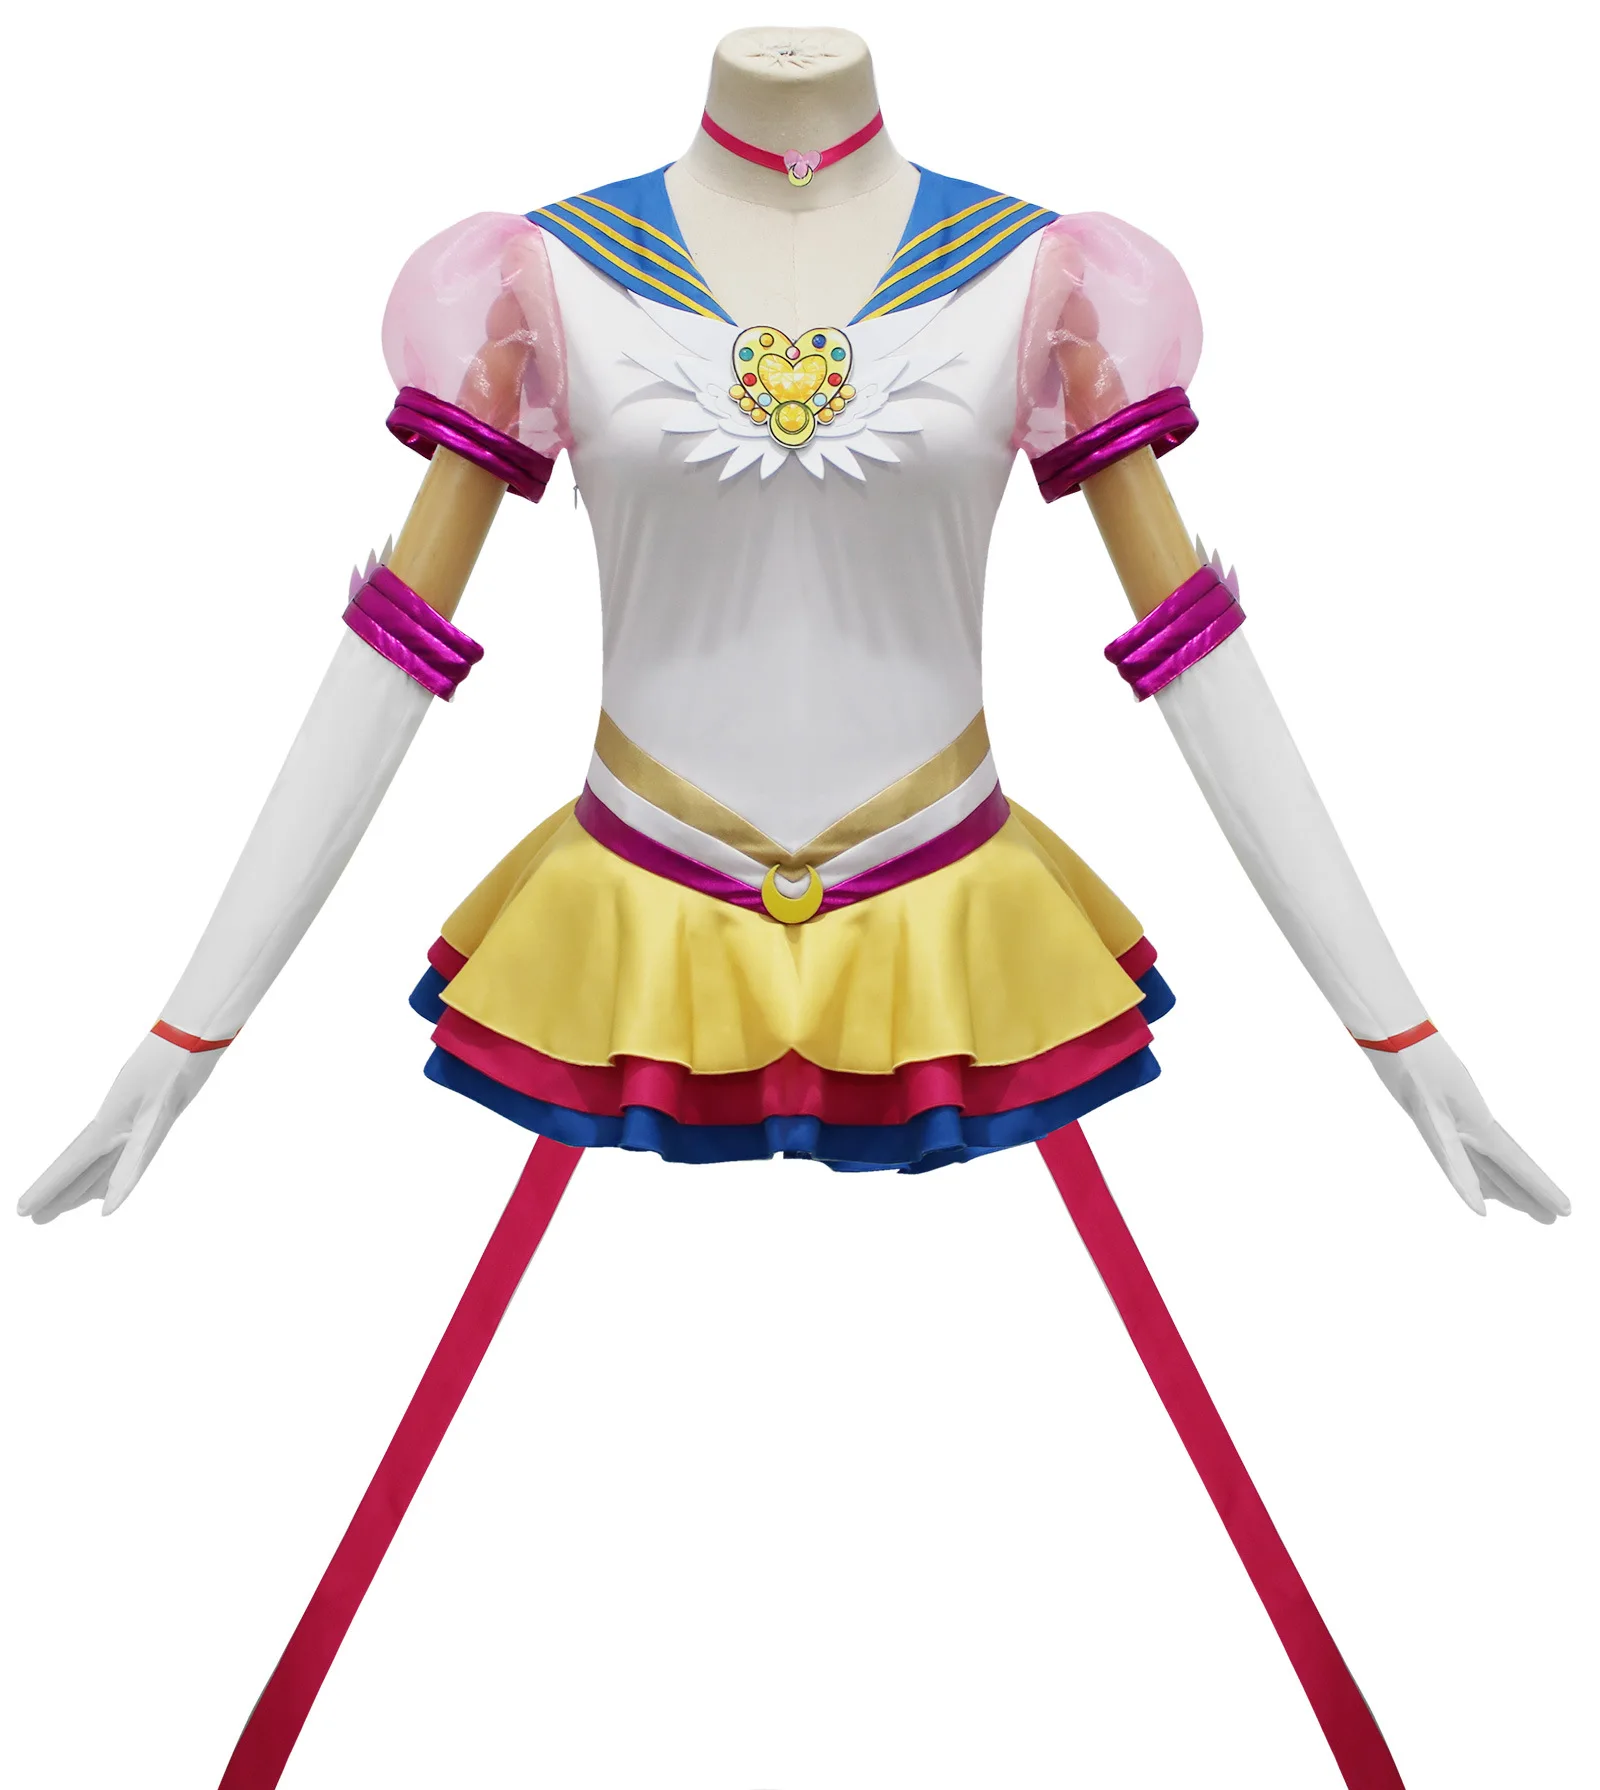 S7d9fb2132f43479dac9cd206fda885f69 - Sailor Moon Store